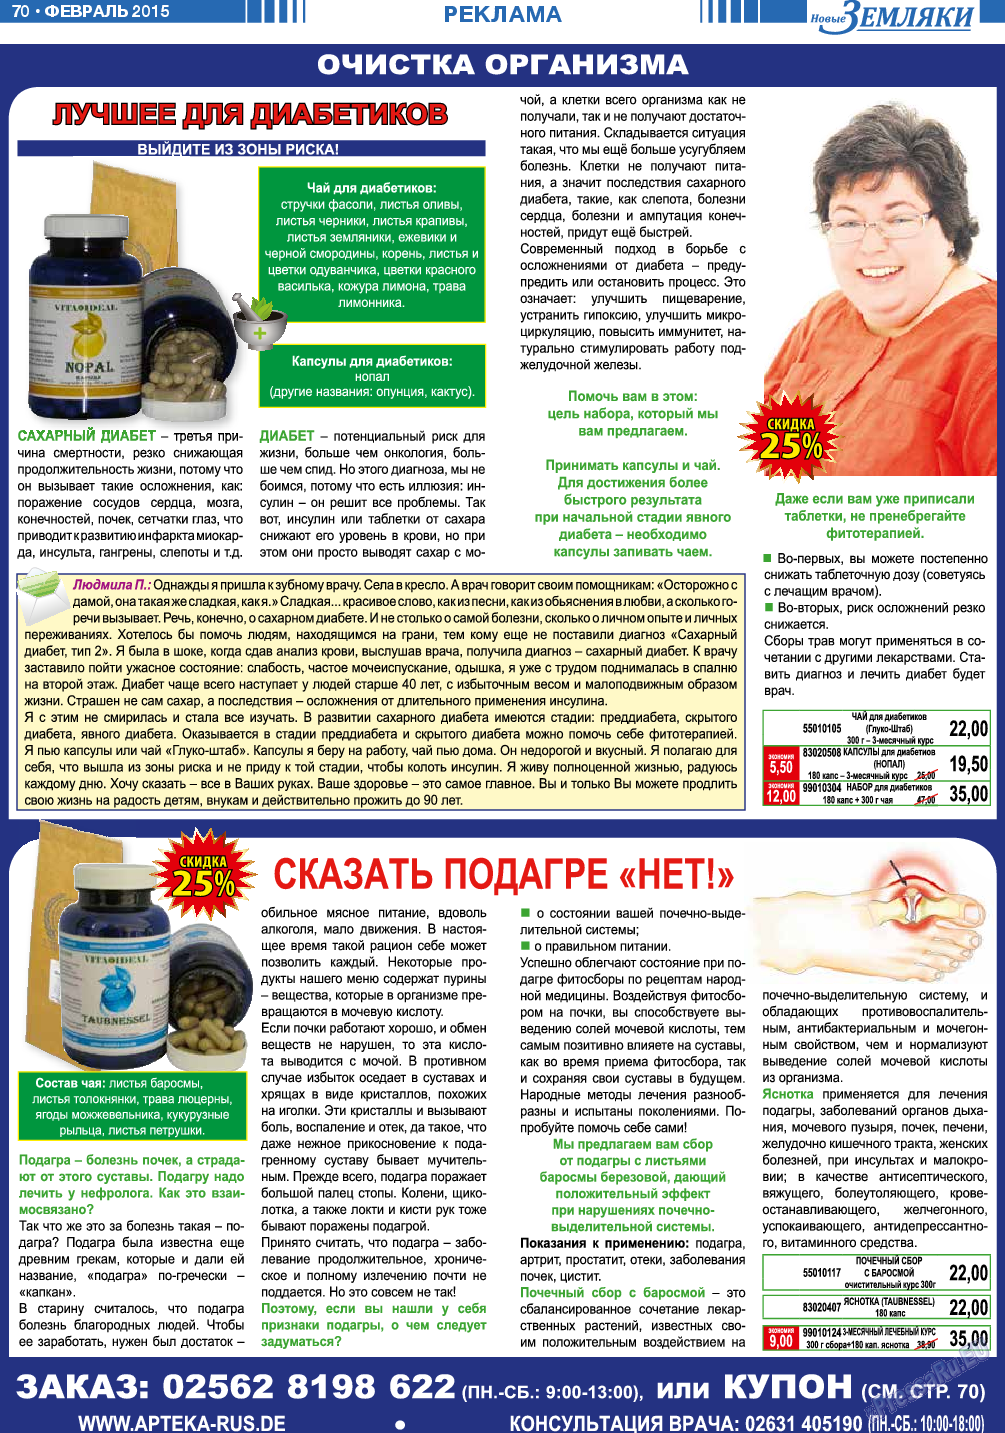 Новые Земляки, газета. 2015 №2 стр.70